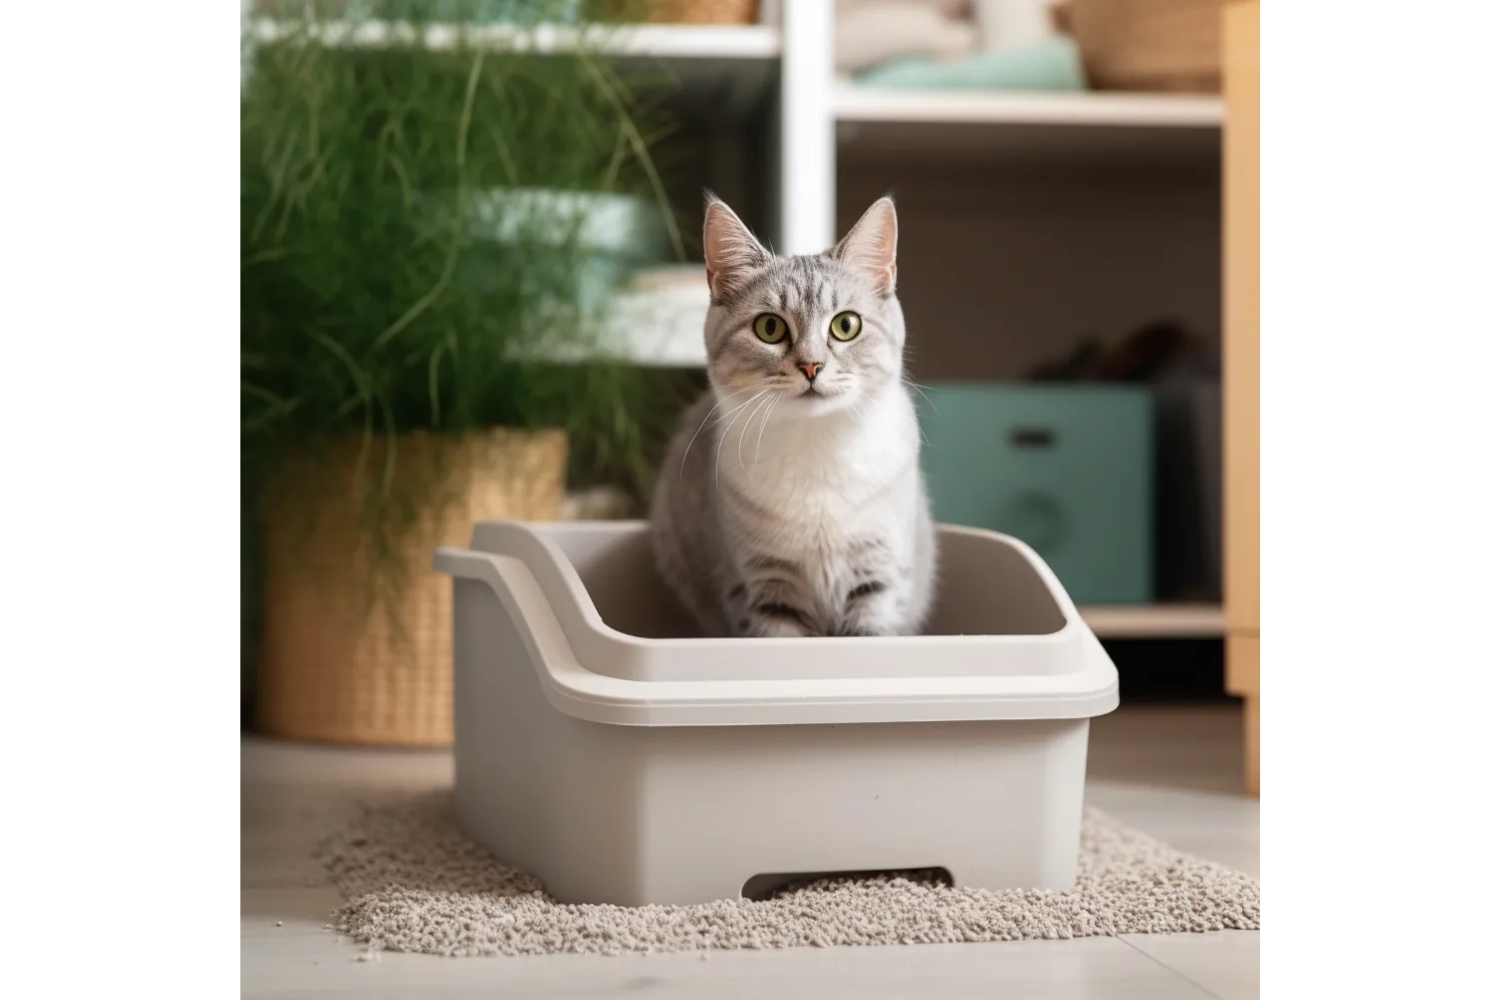 Het aanbod aan kattenbakken en kattenbakkenvulling is enorm. Keuze uit kattenbakken met of zonder kap of zelfs met zeef. Daarbij is ook in kattenvulling veel mogelijk. In deze blog lees je tips om tot de beste keuze te komen.